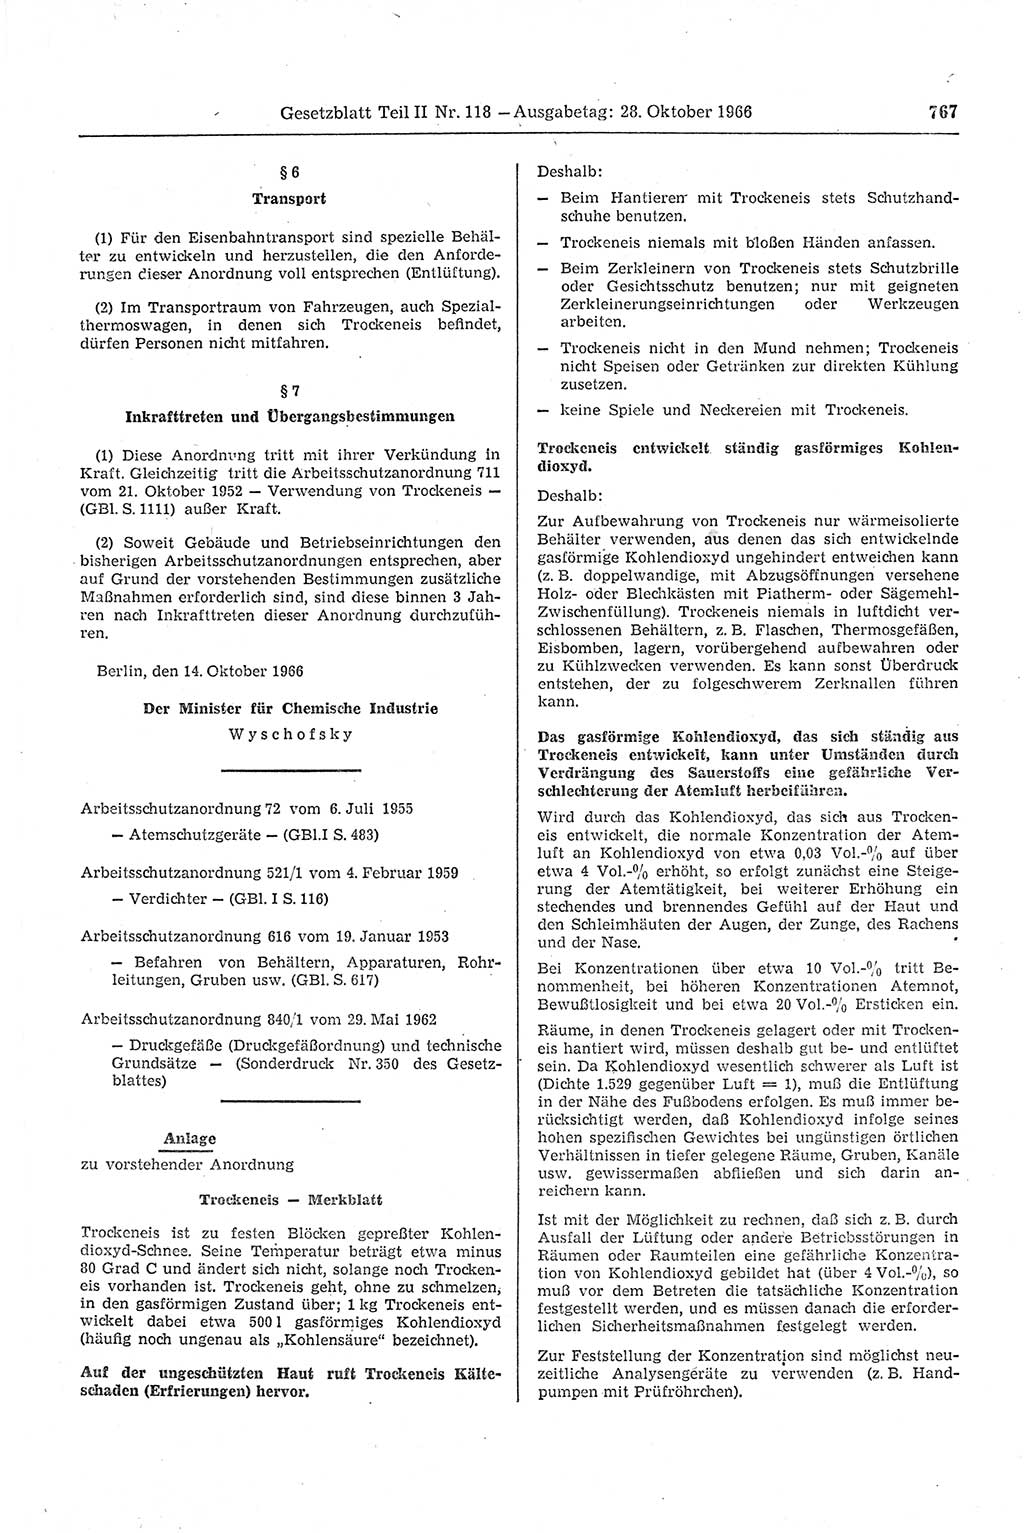 Gesetzblatt (GBl.) der Deutschen Demokratischen Republik (DDR) Teil ⅠⅠ 1966, Seite 767 (GBl. DDR ⅠⅠ 1966, S. 767)